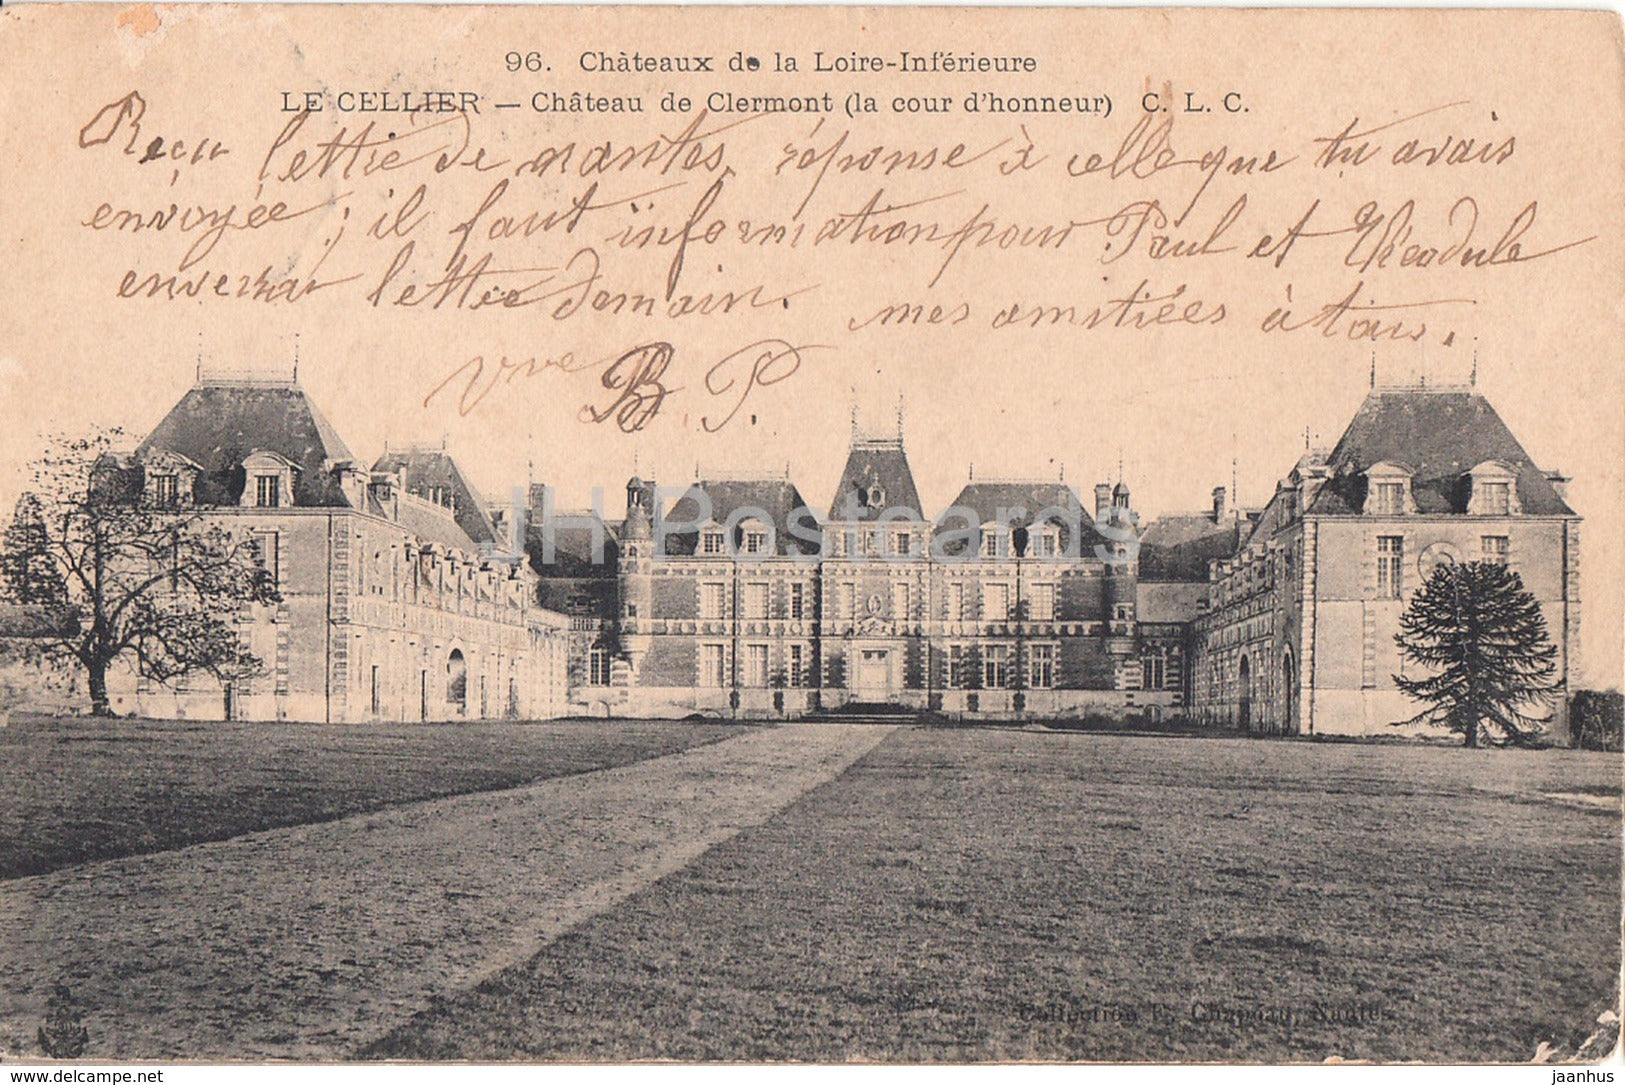 Le Cellier - Chateau de Clermont - castle - old postcard - 1905 - France - used